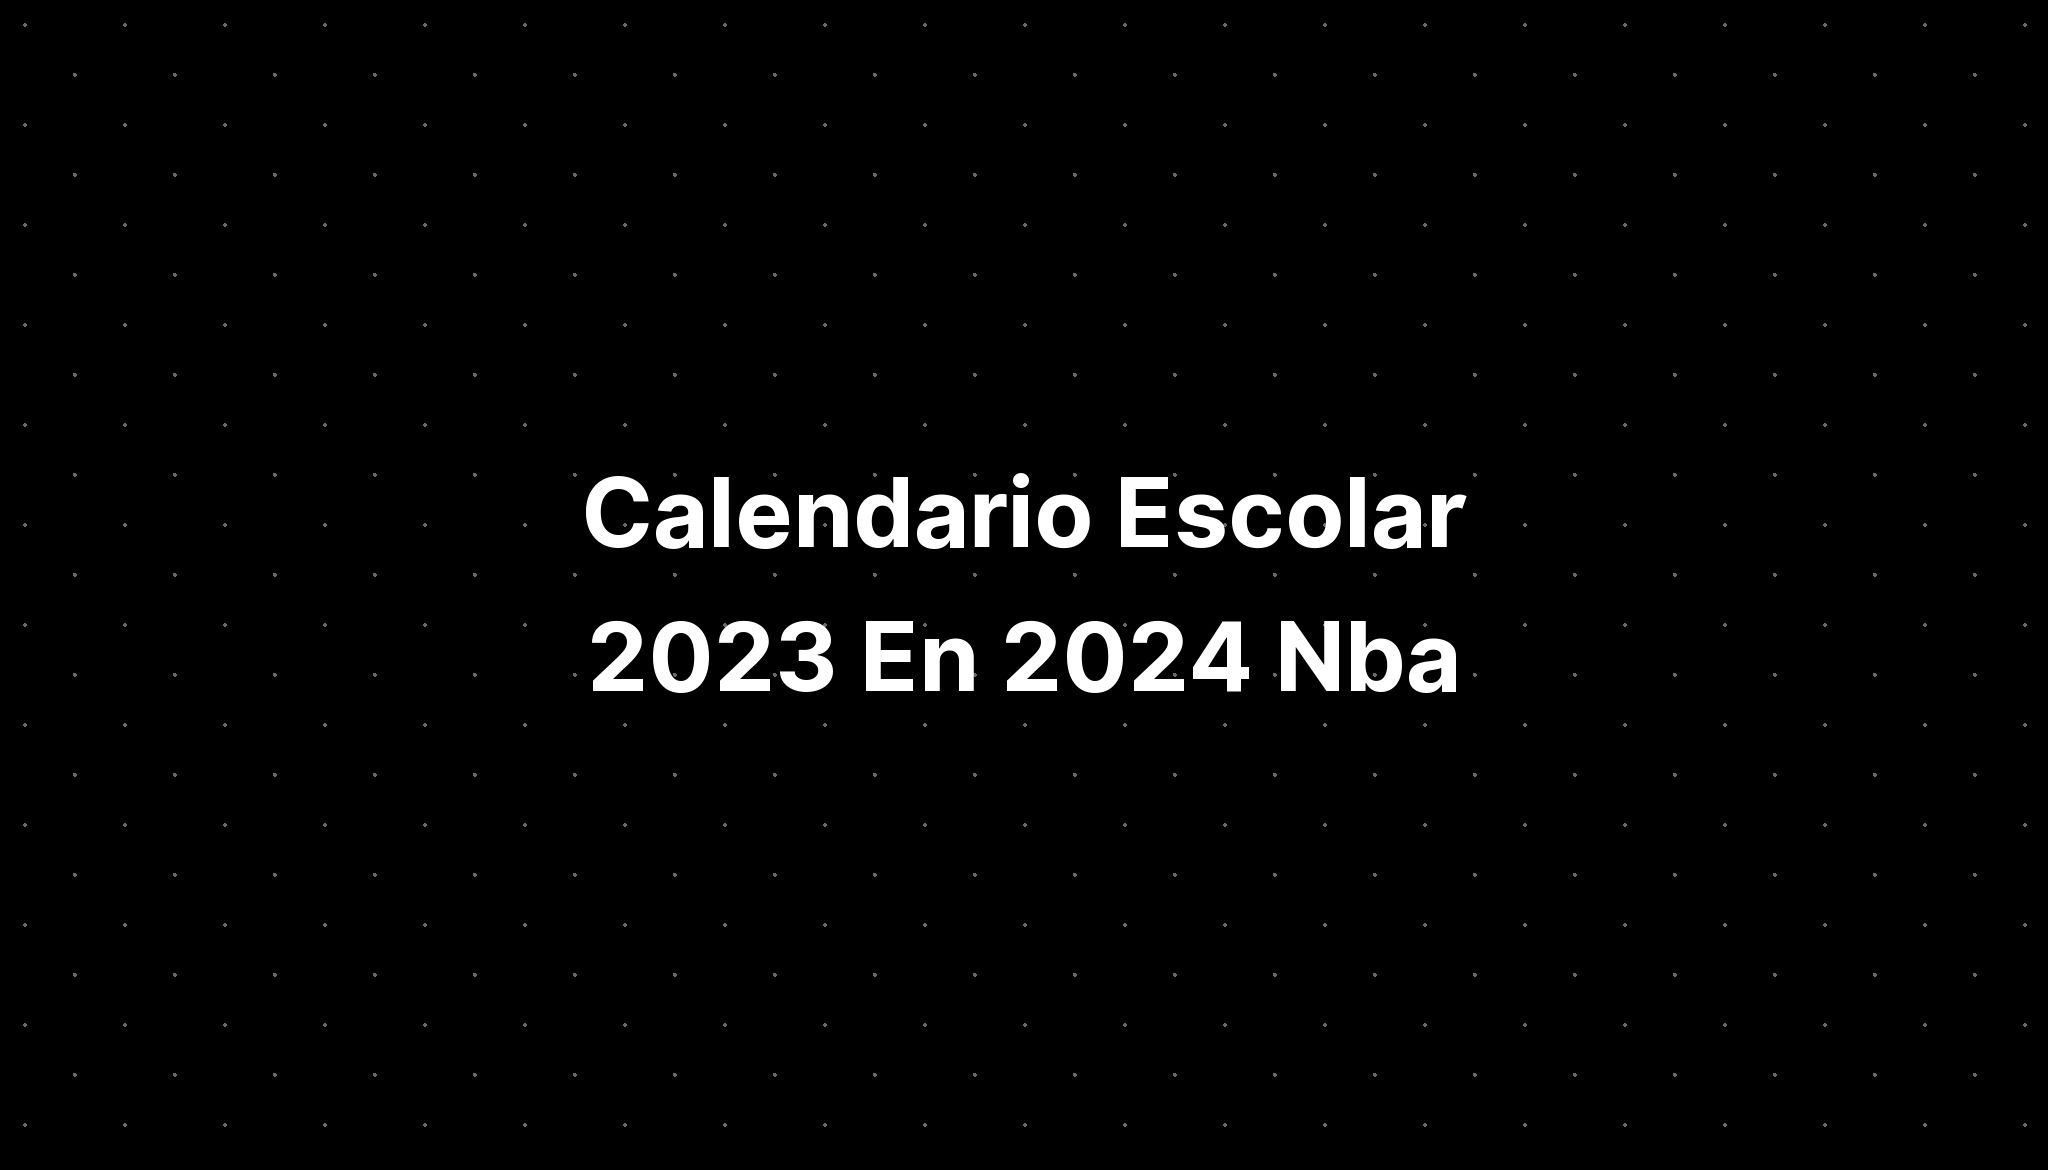 Calendario Escolar 2023 En 2024 Nba IMAGESEE